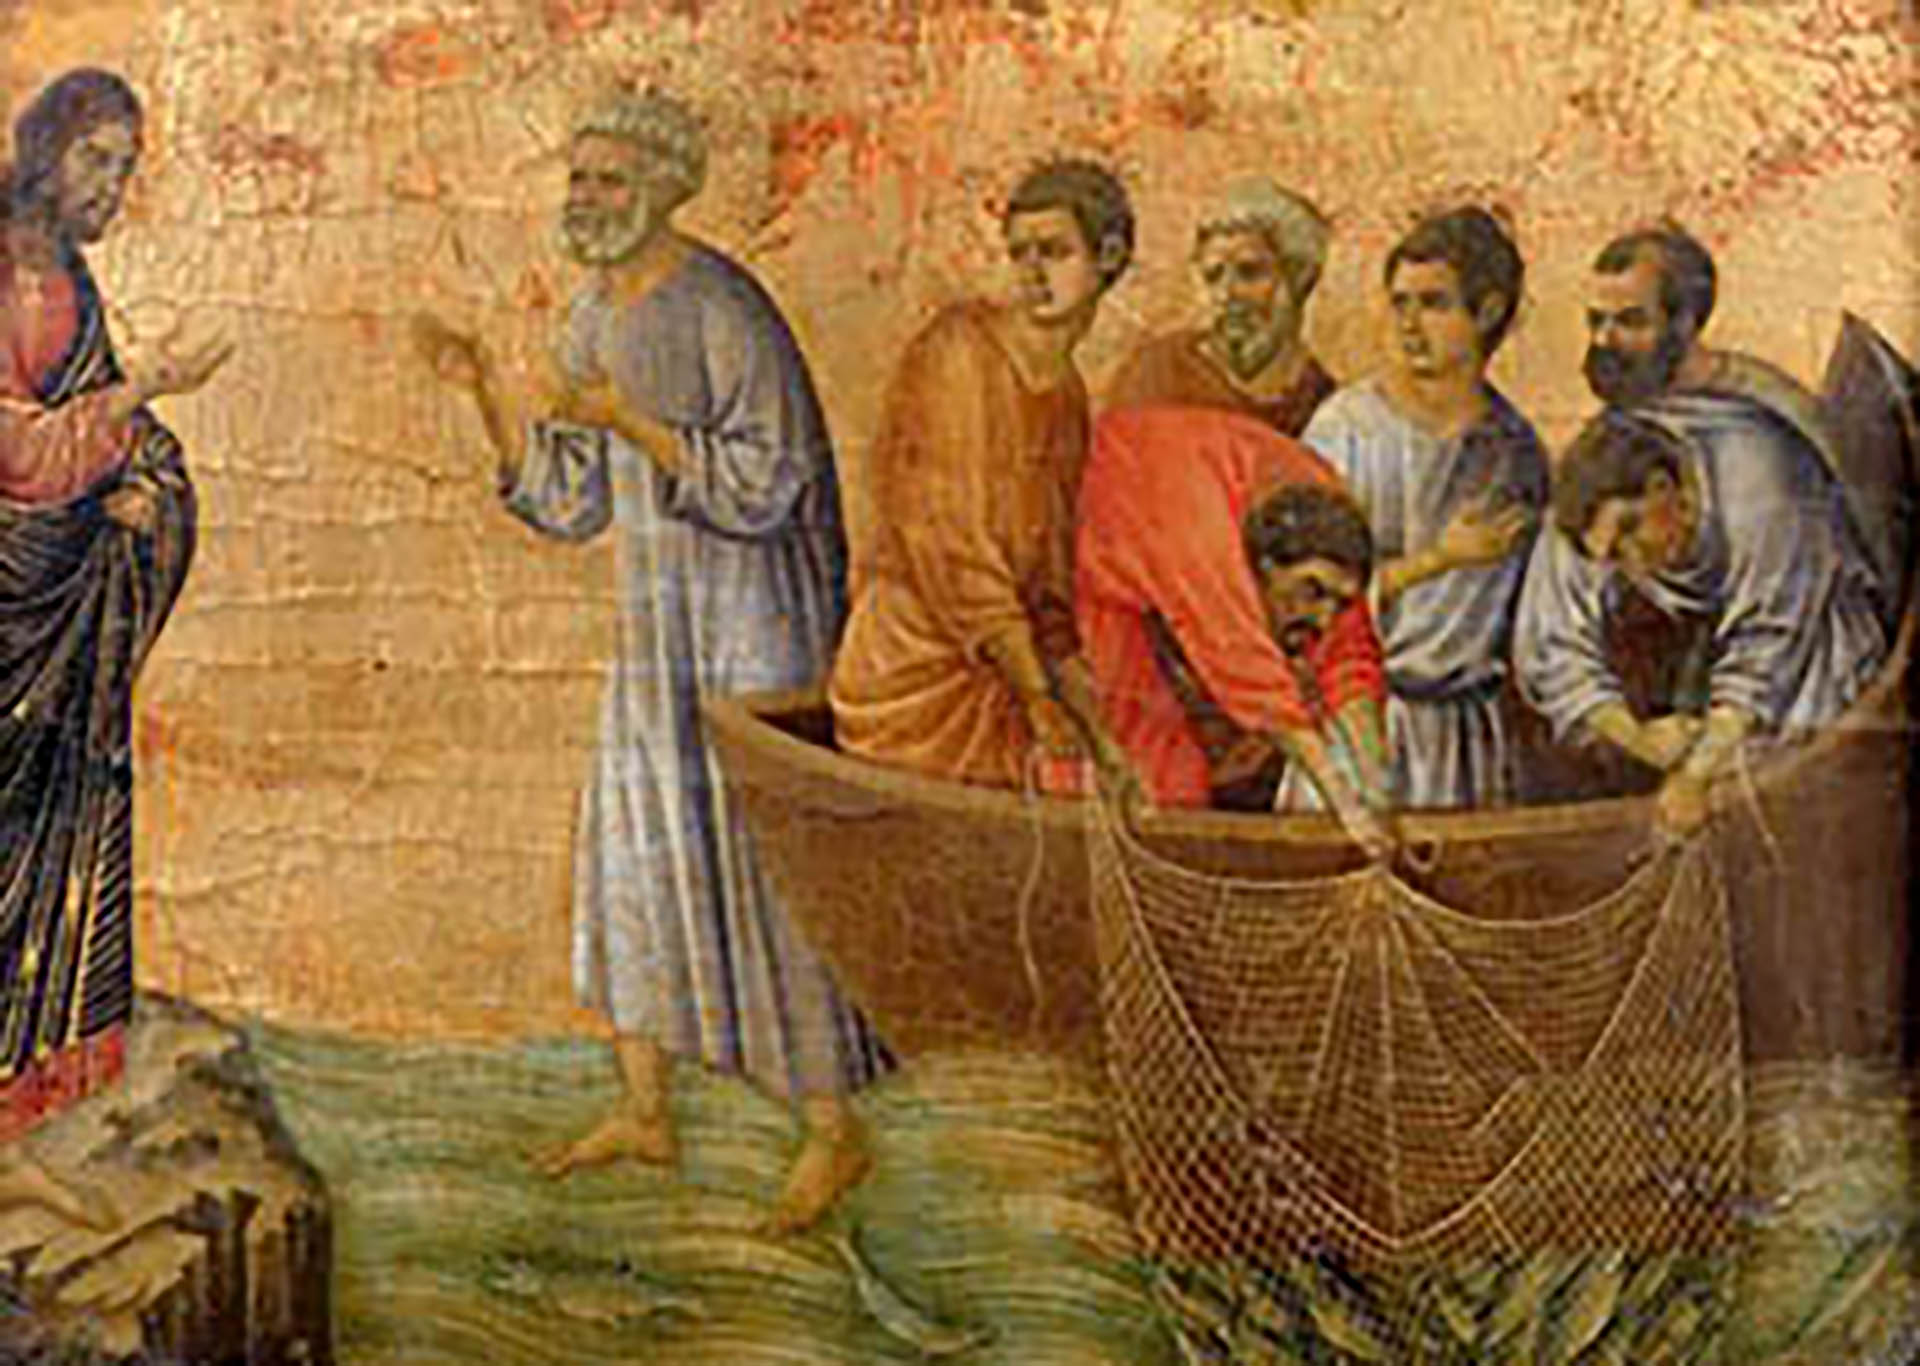 "La pesca milagrosa", de Duccio. Representa la cuarta aparición de Cristo resucitado a sus apóstoles, según cuenta el evangelio de Juan